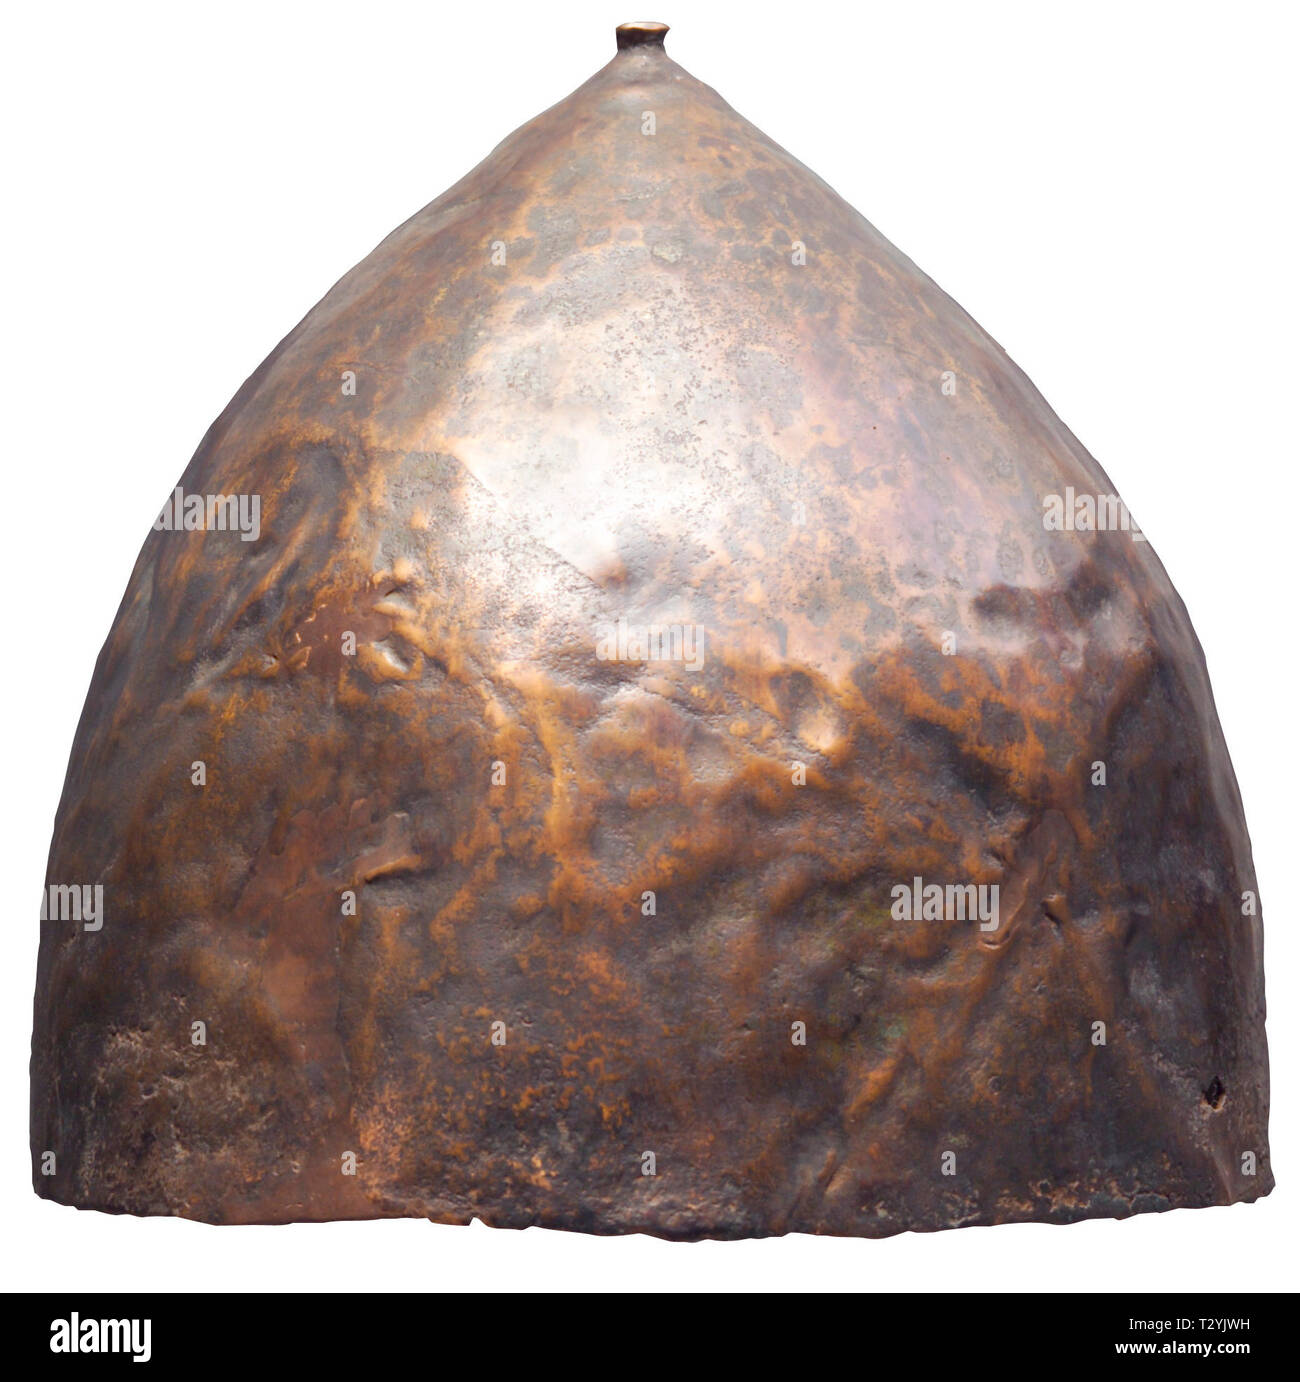 Caschi, elmetti preistorico, Western casco asiatici, bronzo, prima metà del primo millennio A.C. Additional-Rights-Clearance-Info-Not-Available Foto Stock